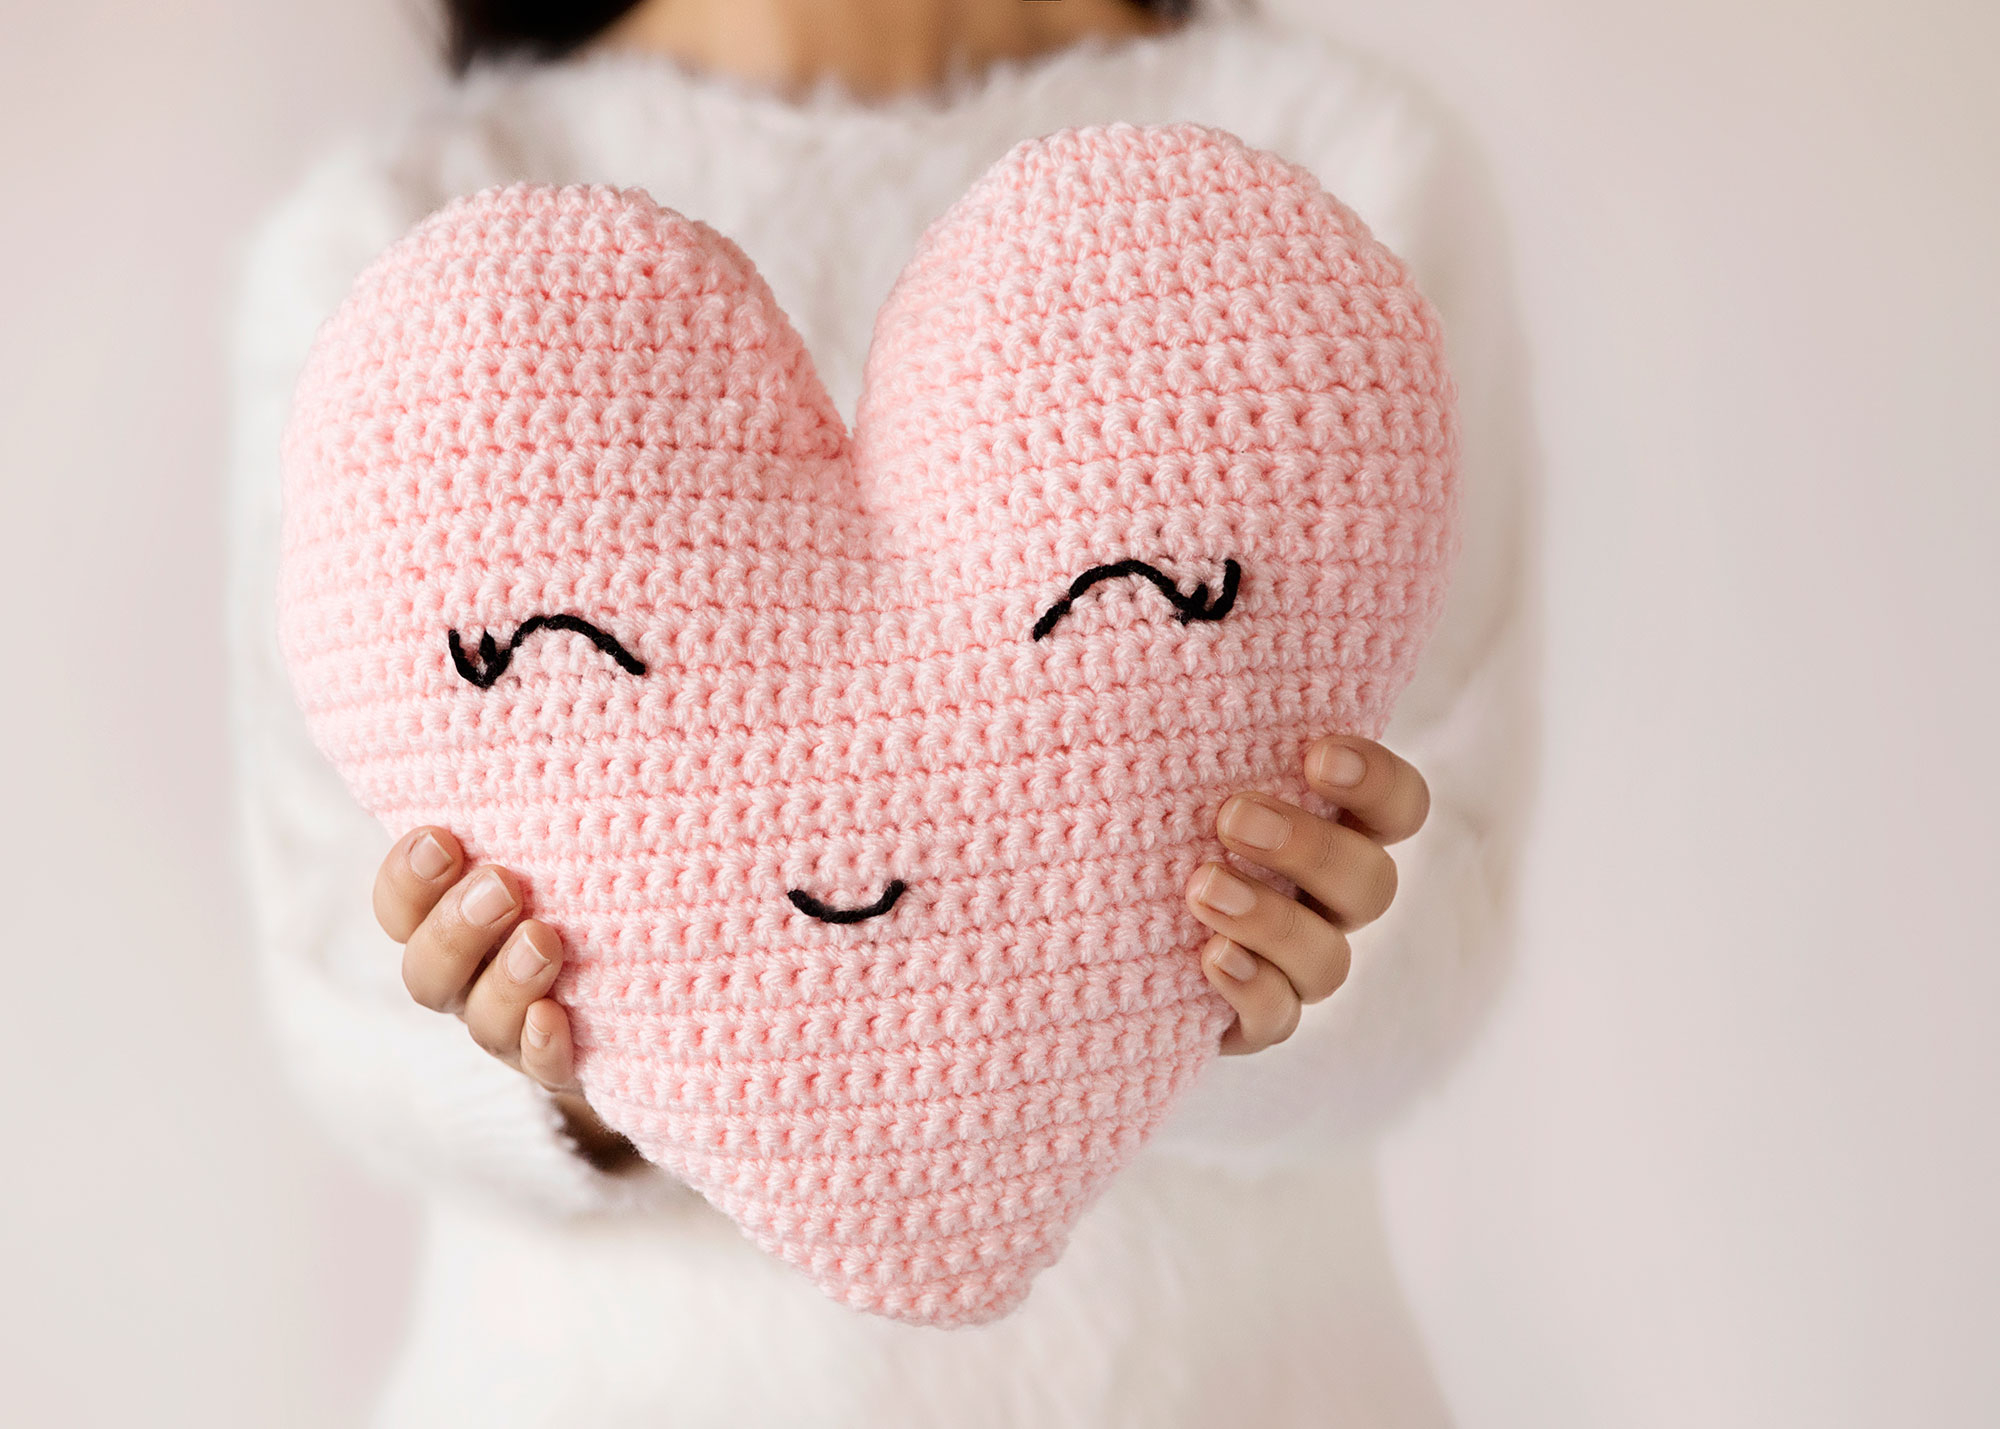 Crochet Heart Pattern Heart Shaped Pillow Crochet Pattern Leelee Knits